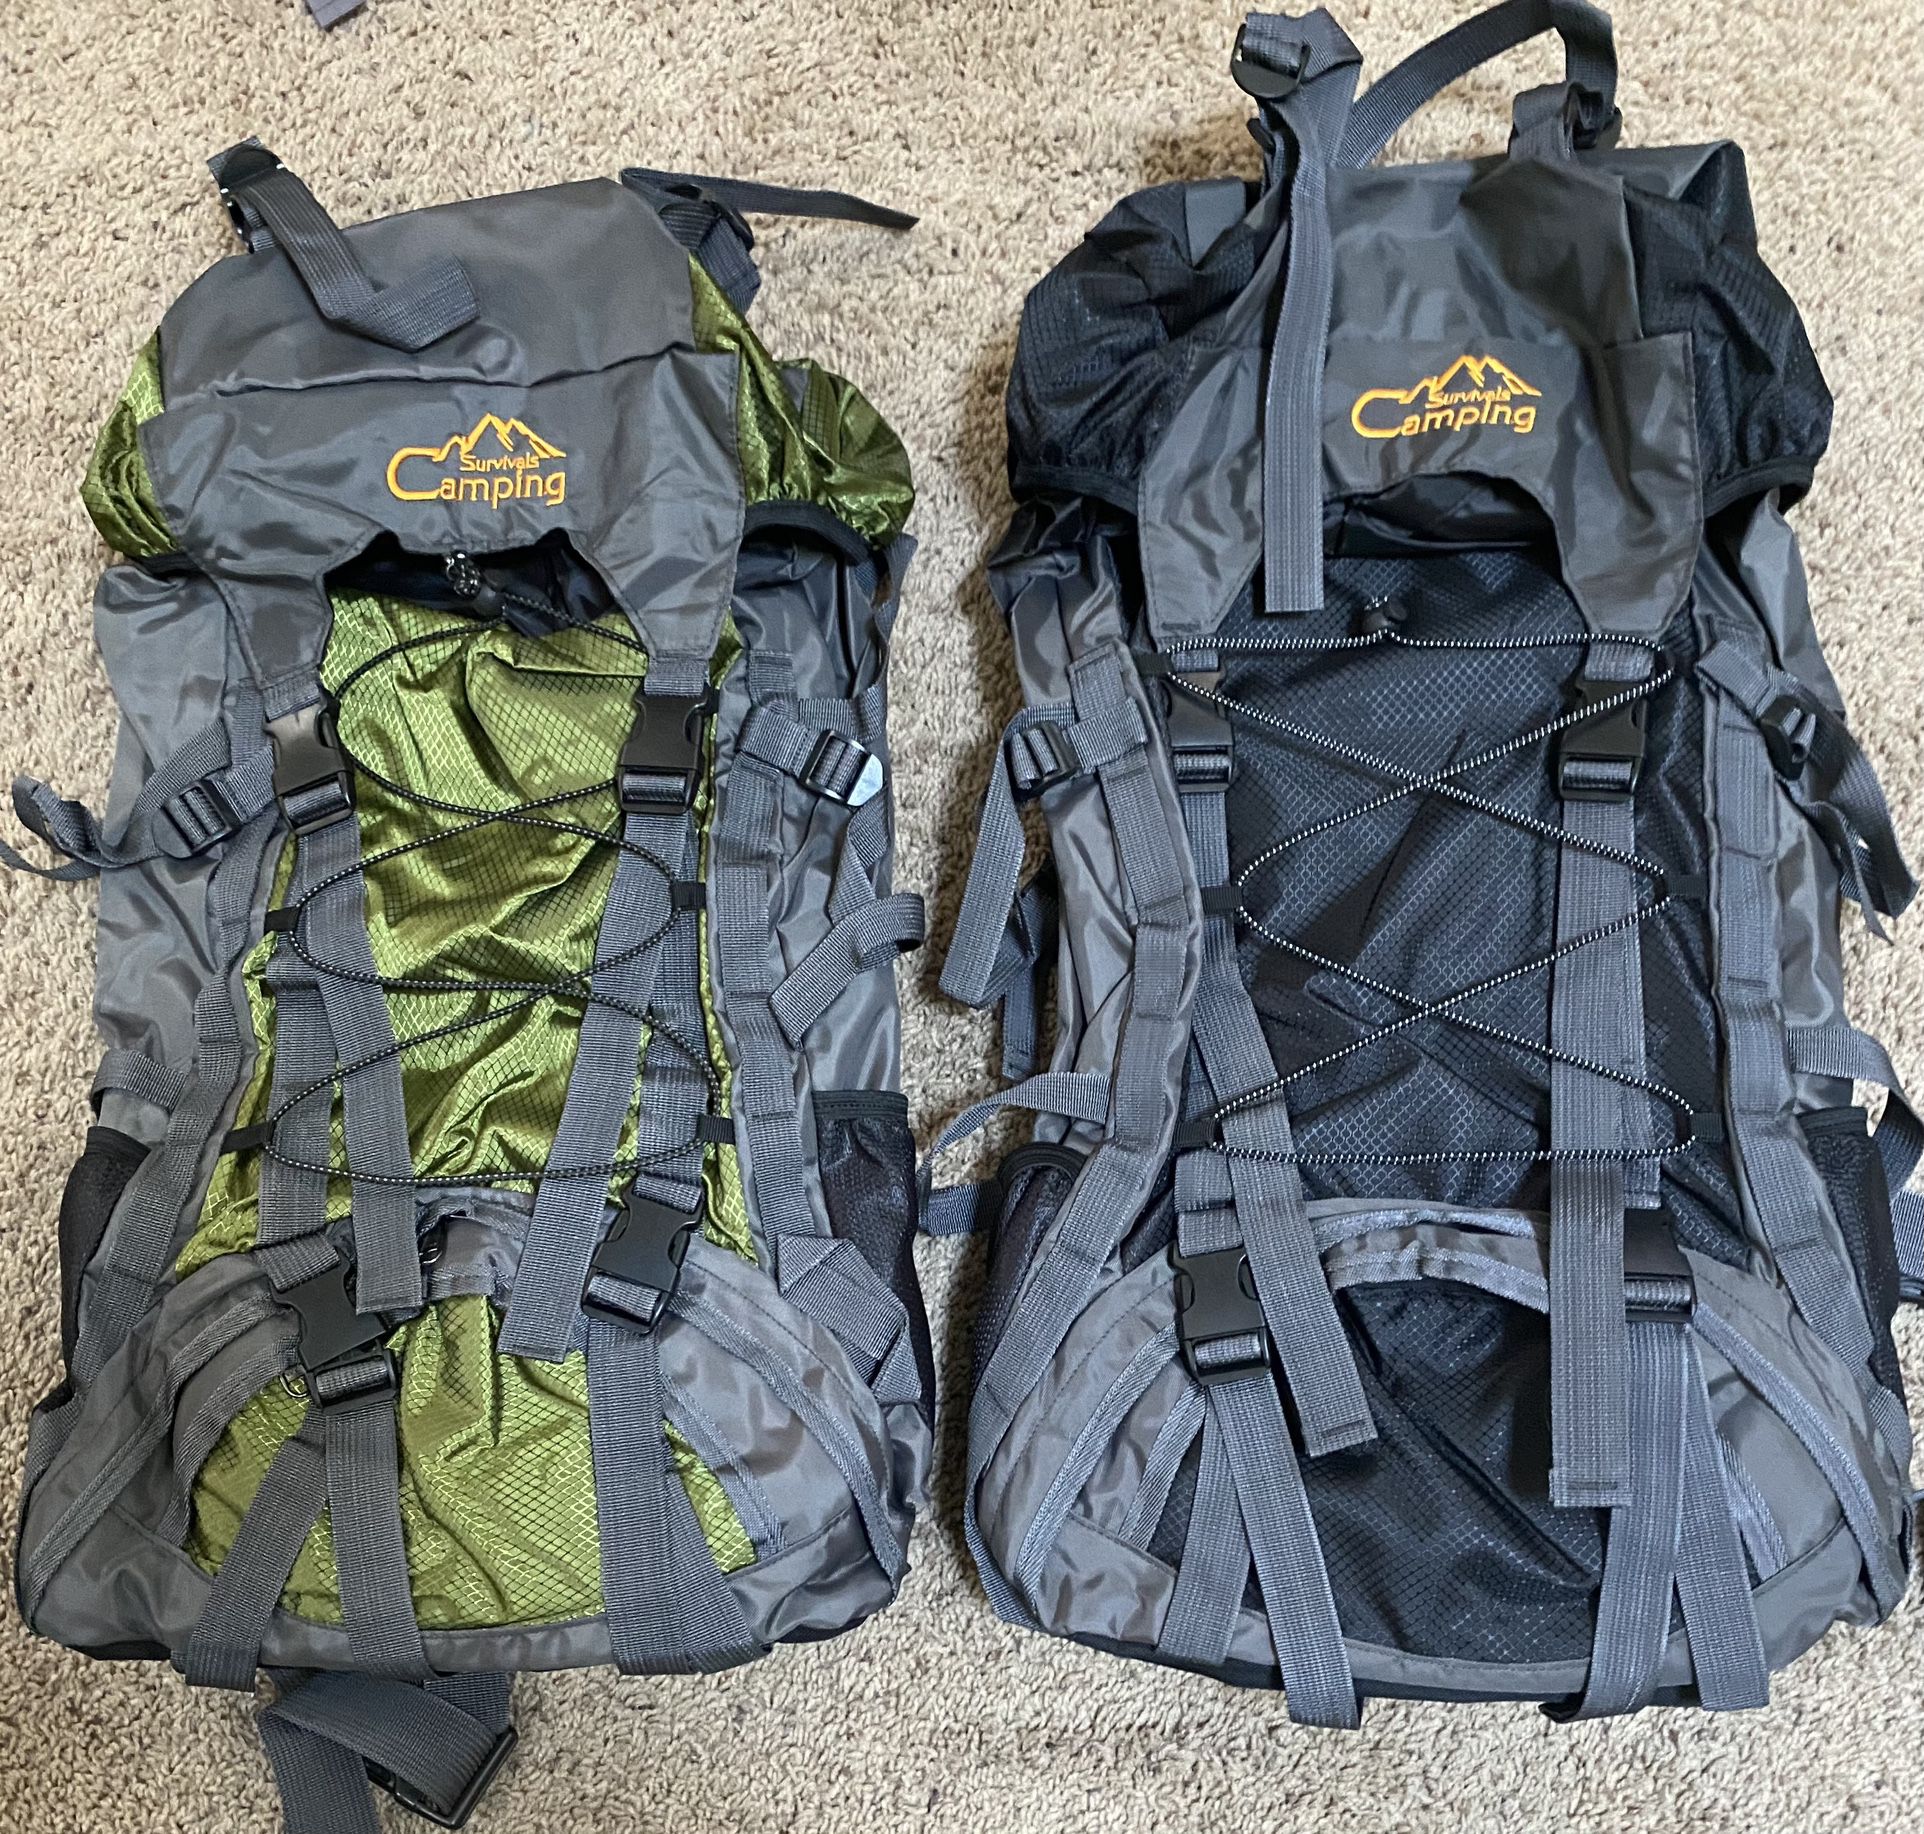 2 Brand New Hiking Backpacks